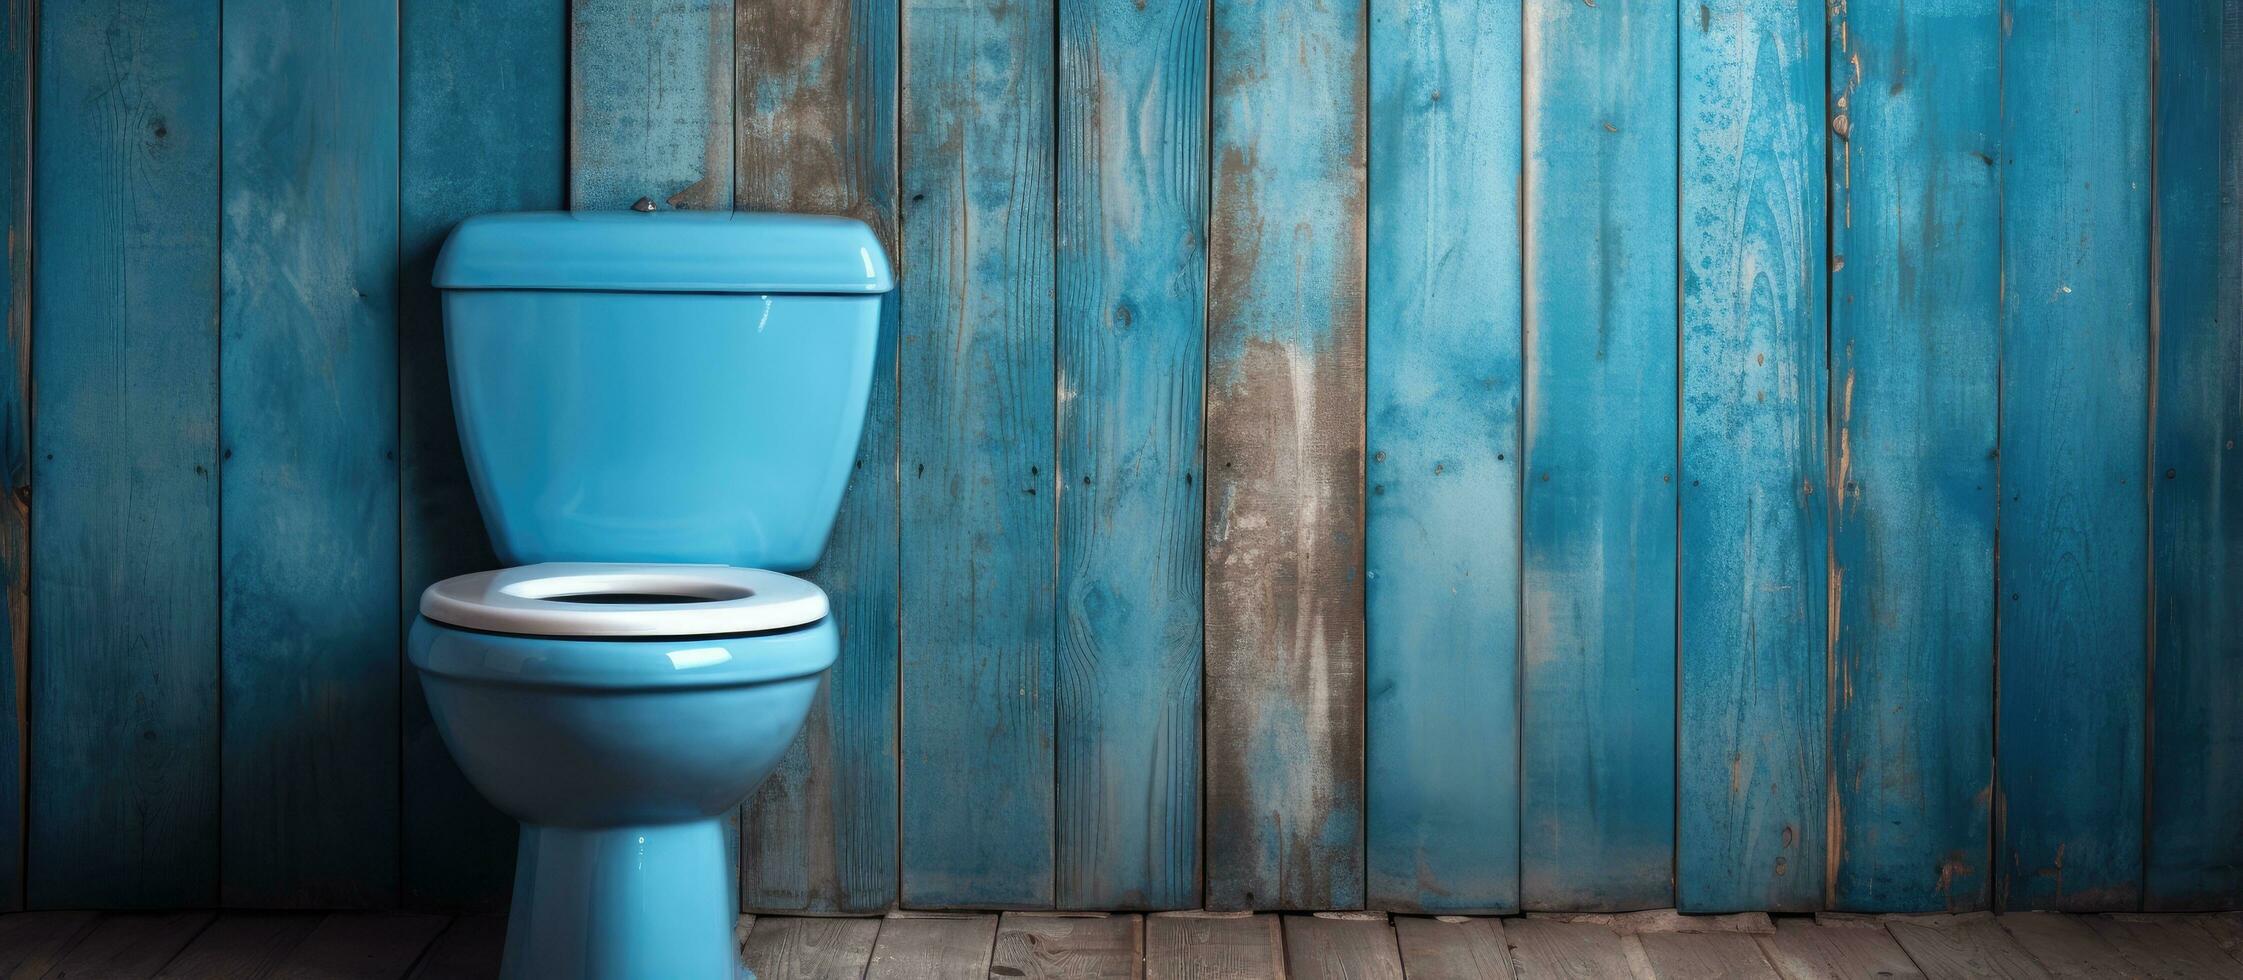 antigo banheiros teve de madeira paredes mas agora elas estão fez com azul cerâmico foto